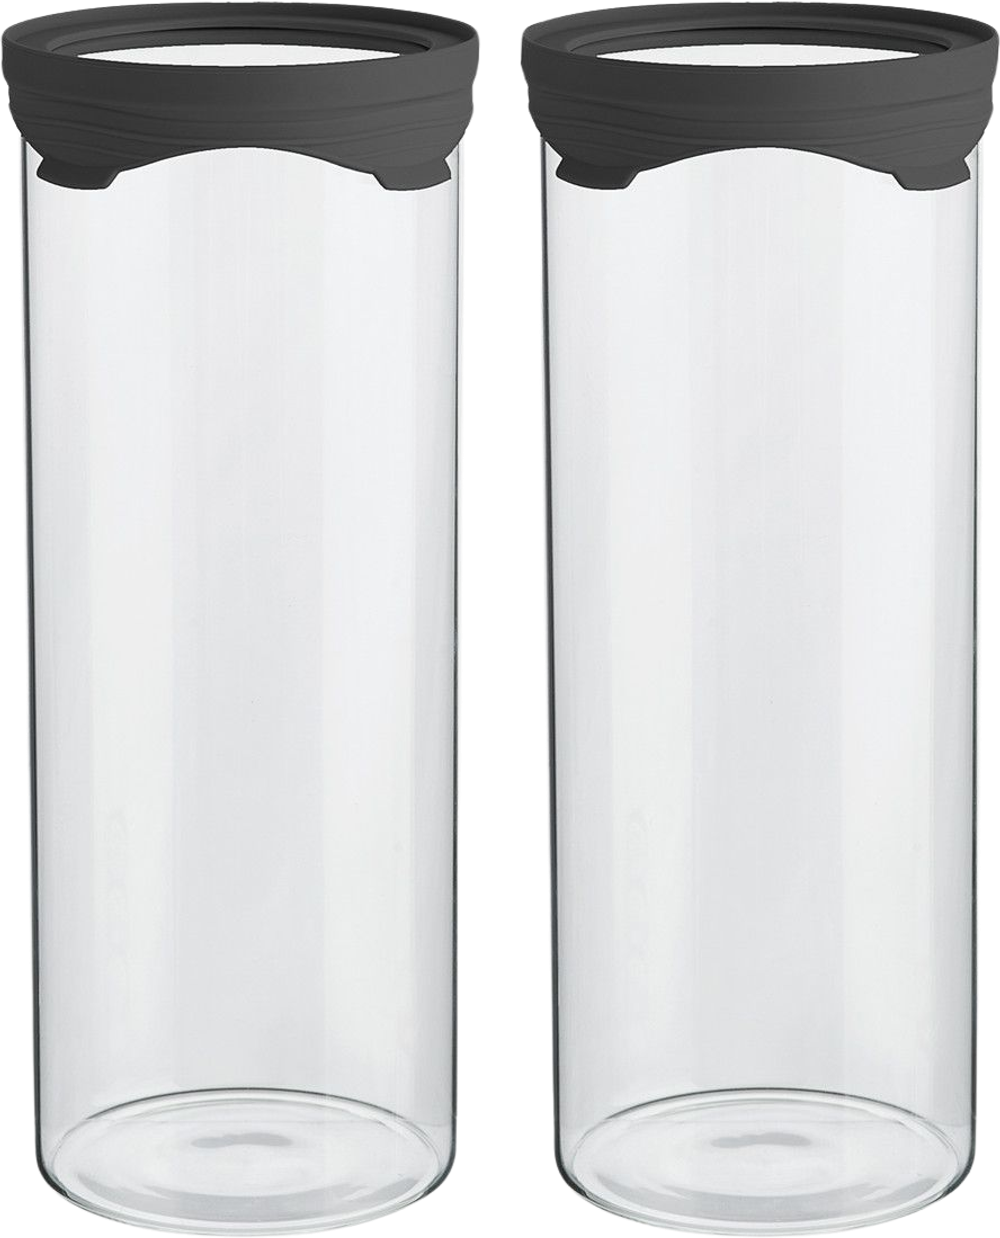 Tilbud på Opbevaringsglas 1.500 ml. 2 stk. (SORT, ONESIZE) (SINNERUP) fra Sinnerup til 99,95 kr.